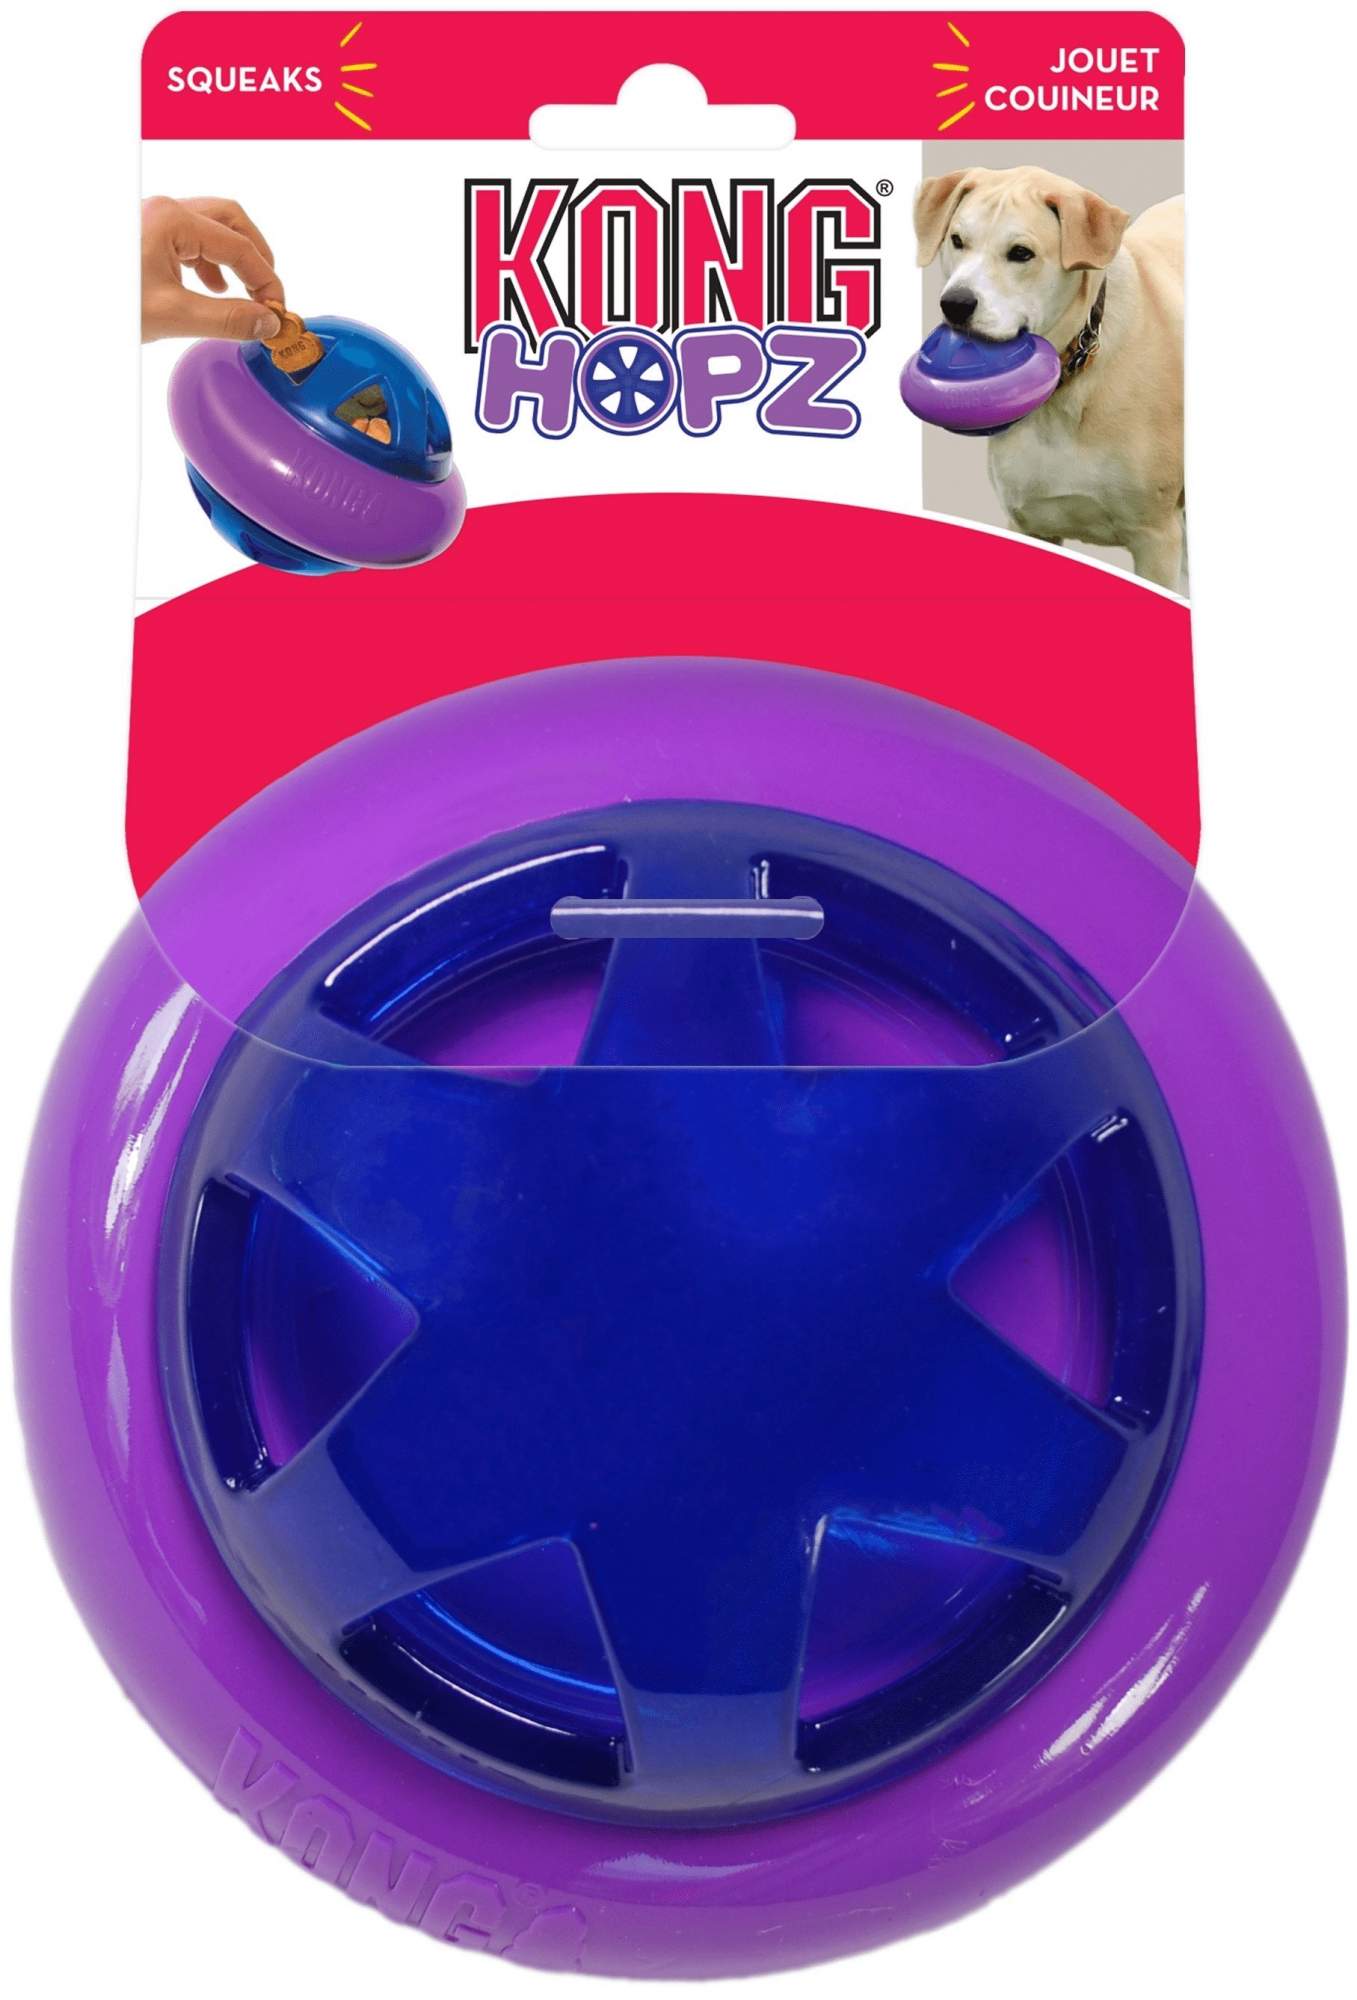 Игрушка для лакомств для собак KONG Hopz, синий, фиолетовый, 17 см